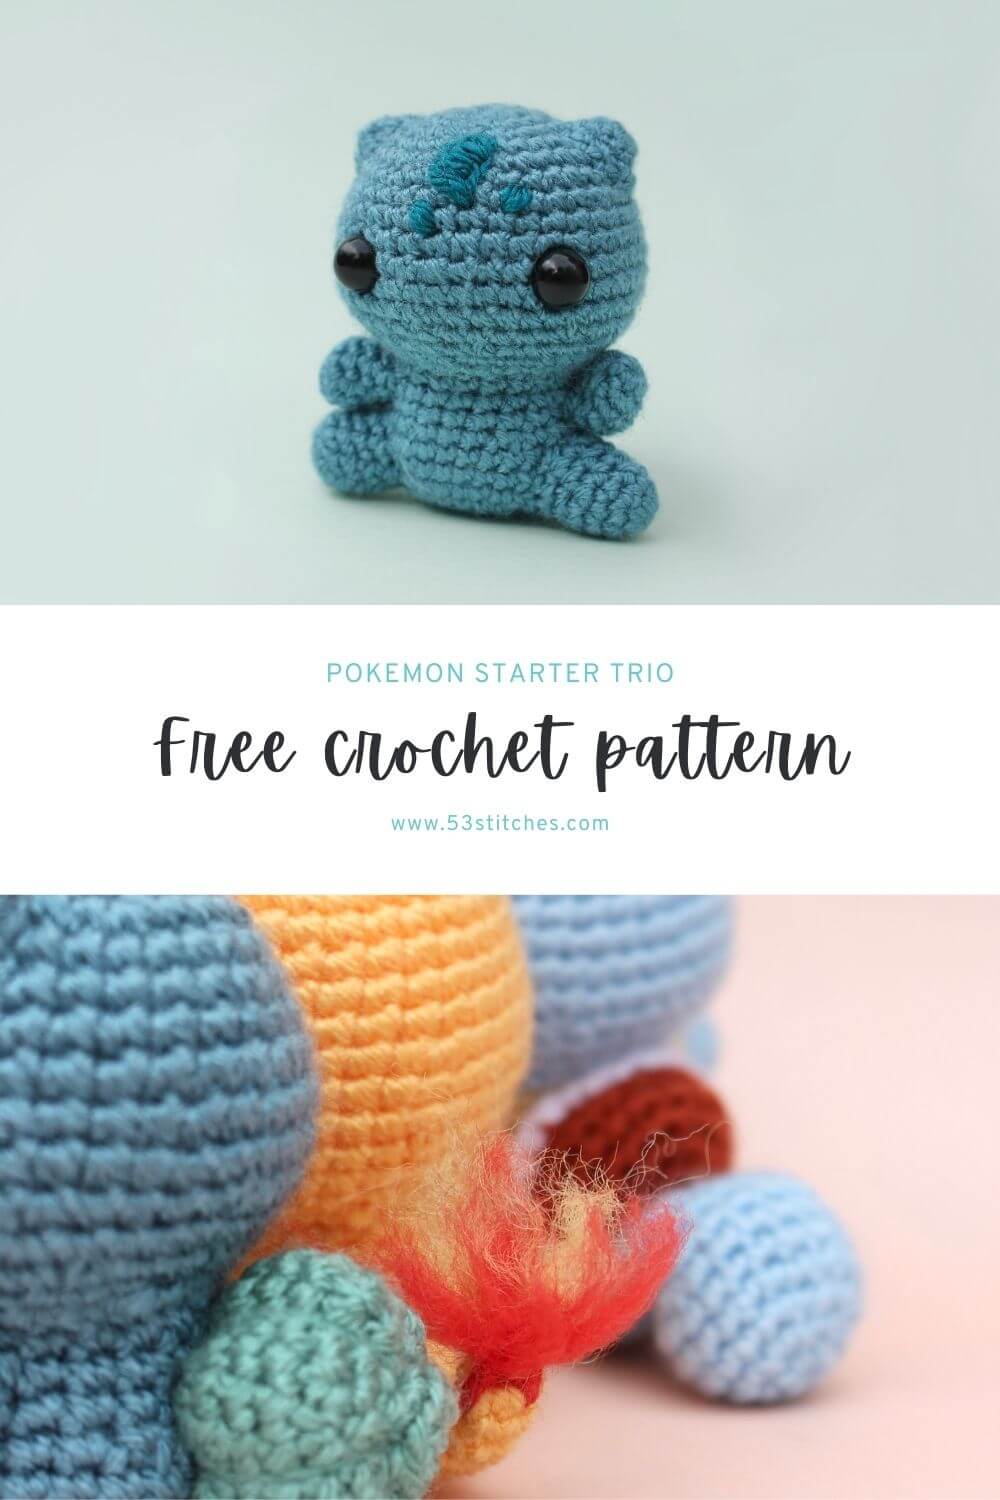 Bulbasaur crochet pattern starter trio